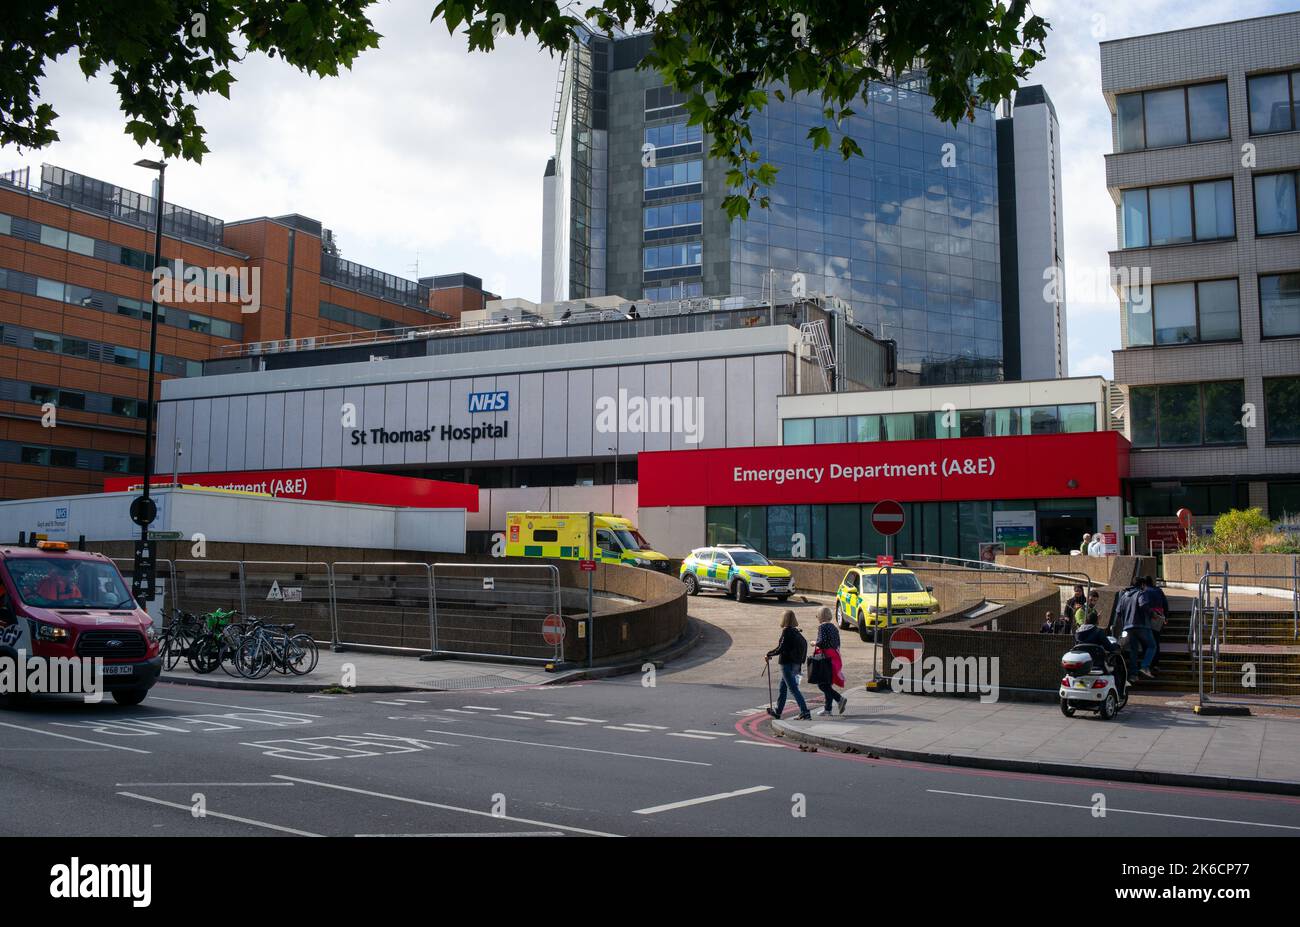 St Thomas Hospital London UK GV der Einfahrt zu A&E (Unfall und Notfall) von der Lambeth Place Straße aus gesehen. Stockfoto